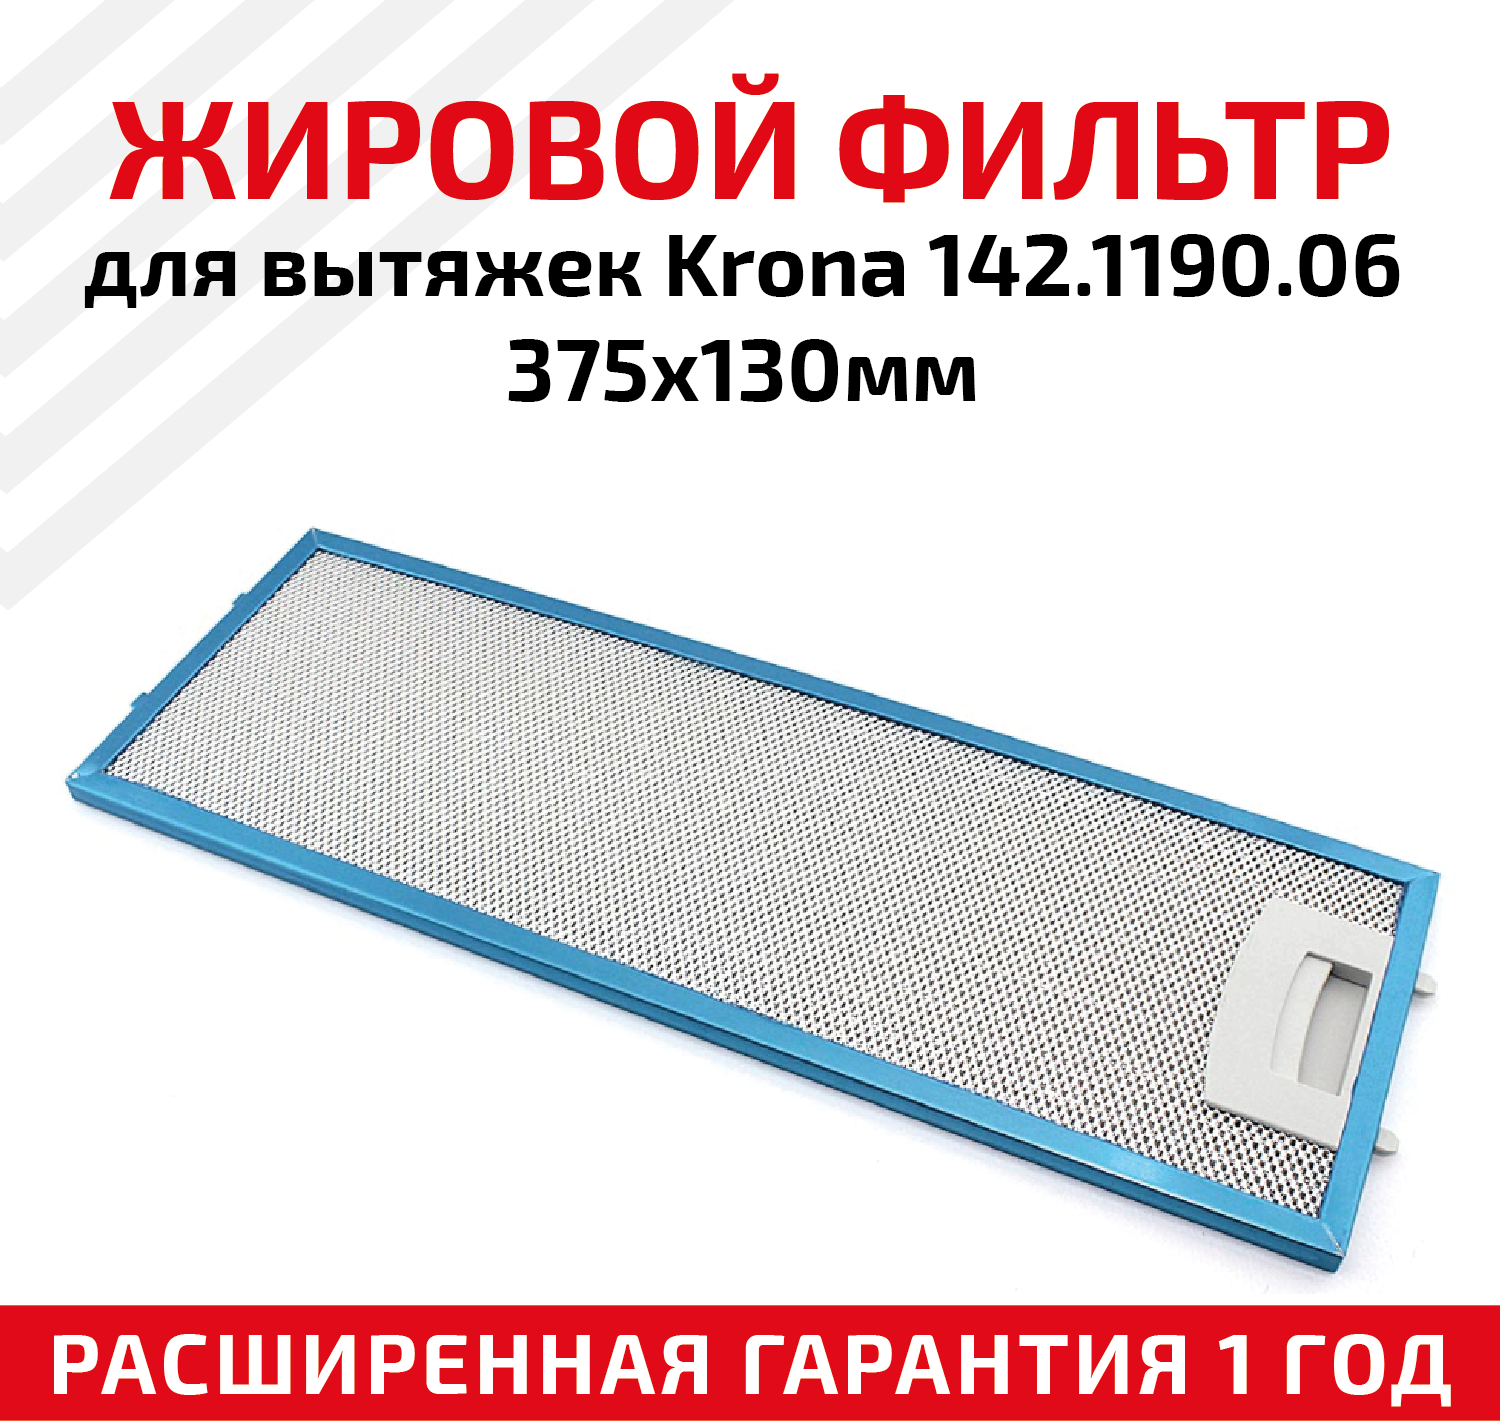 Жировой фильтр (кассета) алюминиевый (металлический) рамочный для вытяжек Krona 142.1190.06 многоразовый 375х130мм